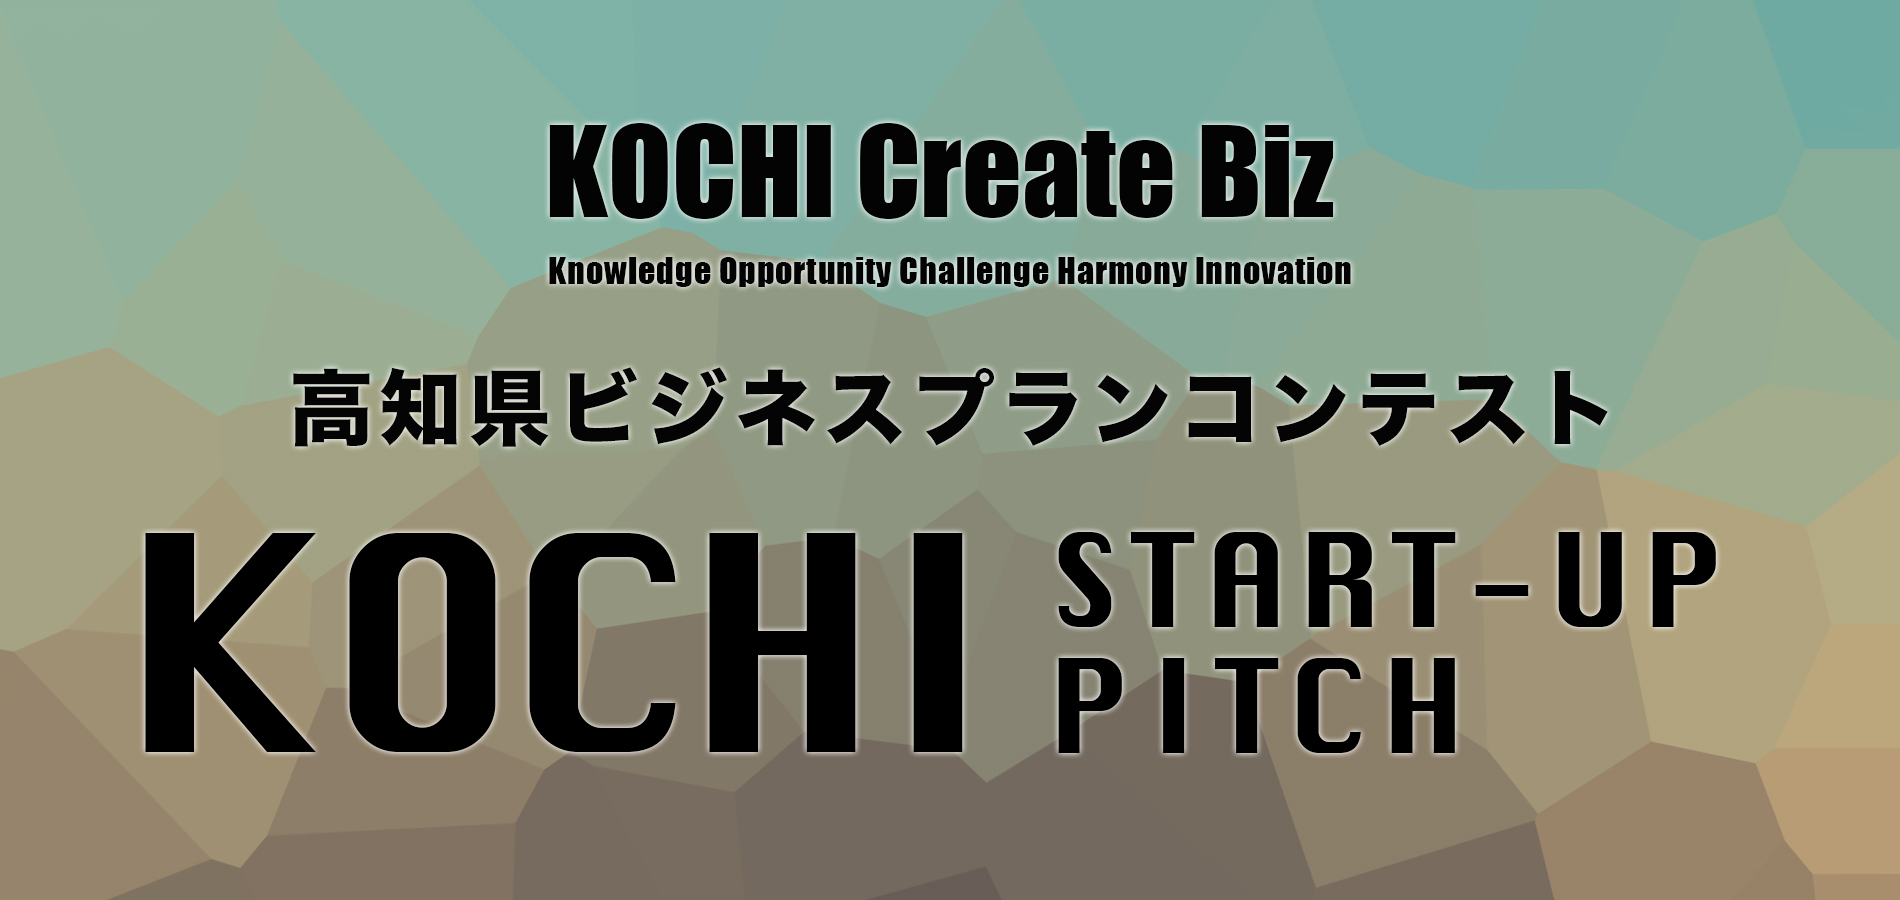 スタートアップビジネスコンテスト Kochi Start-up Pitch